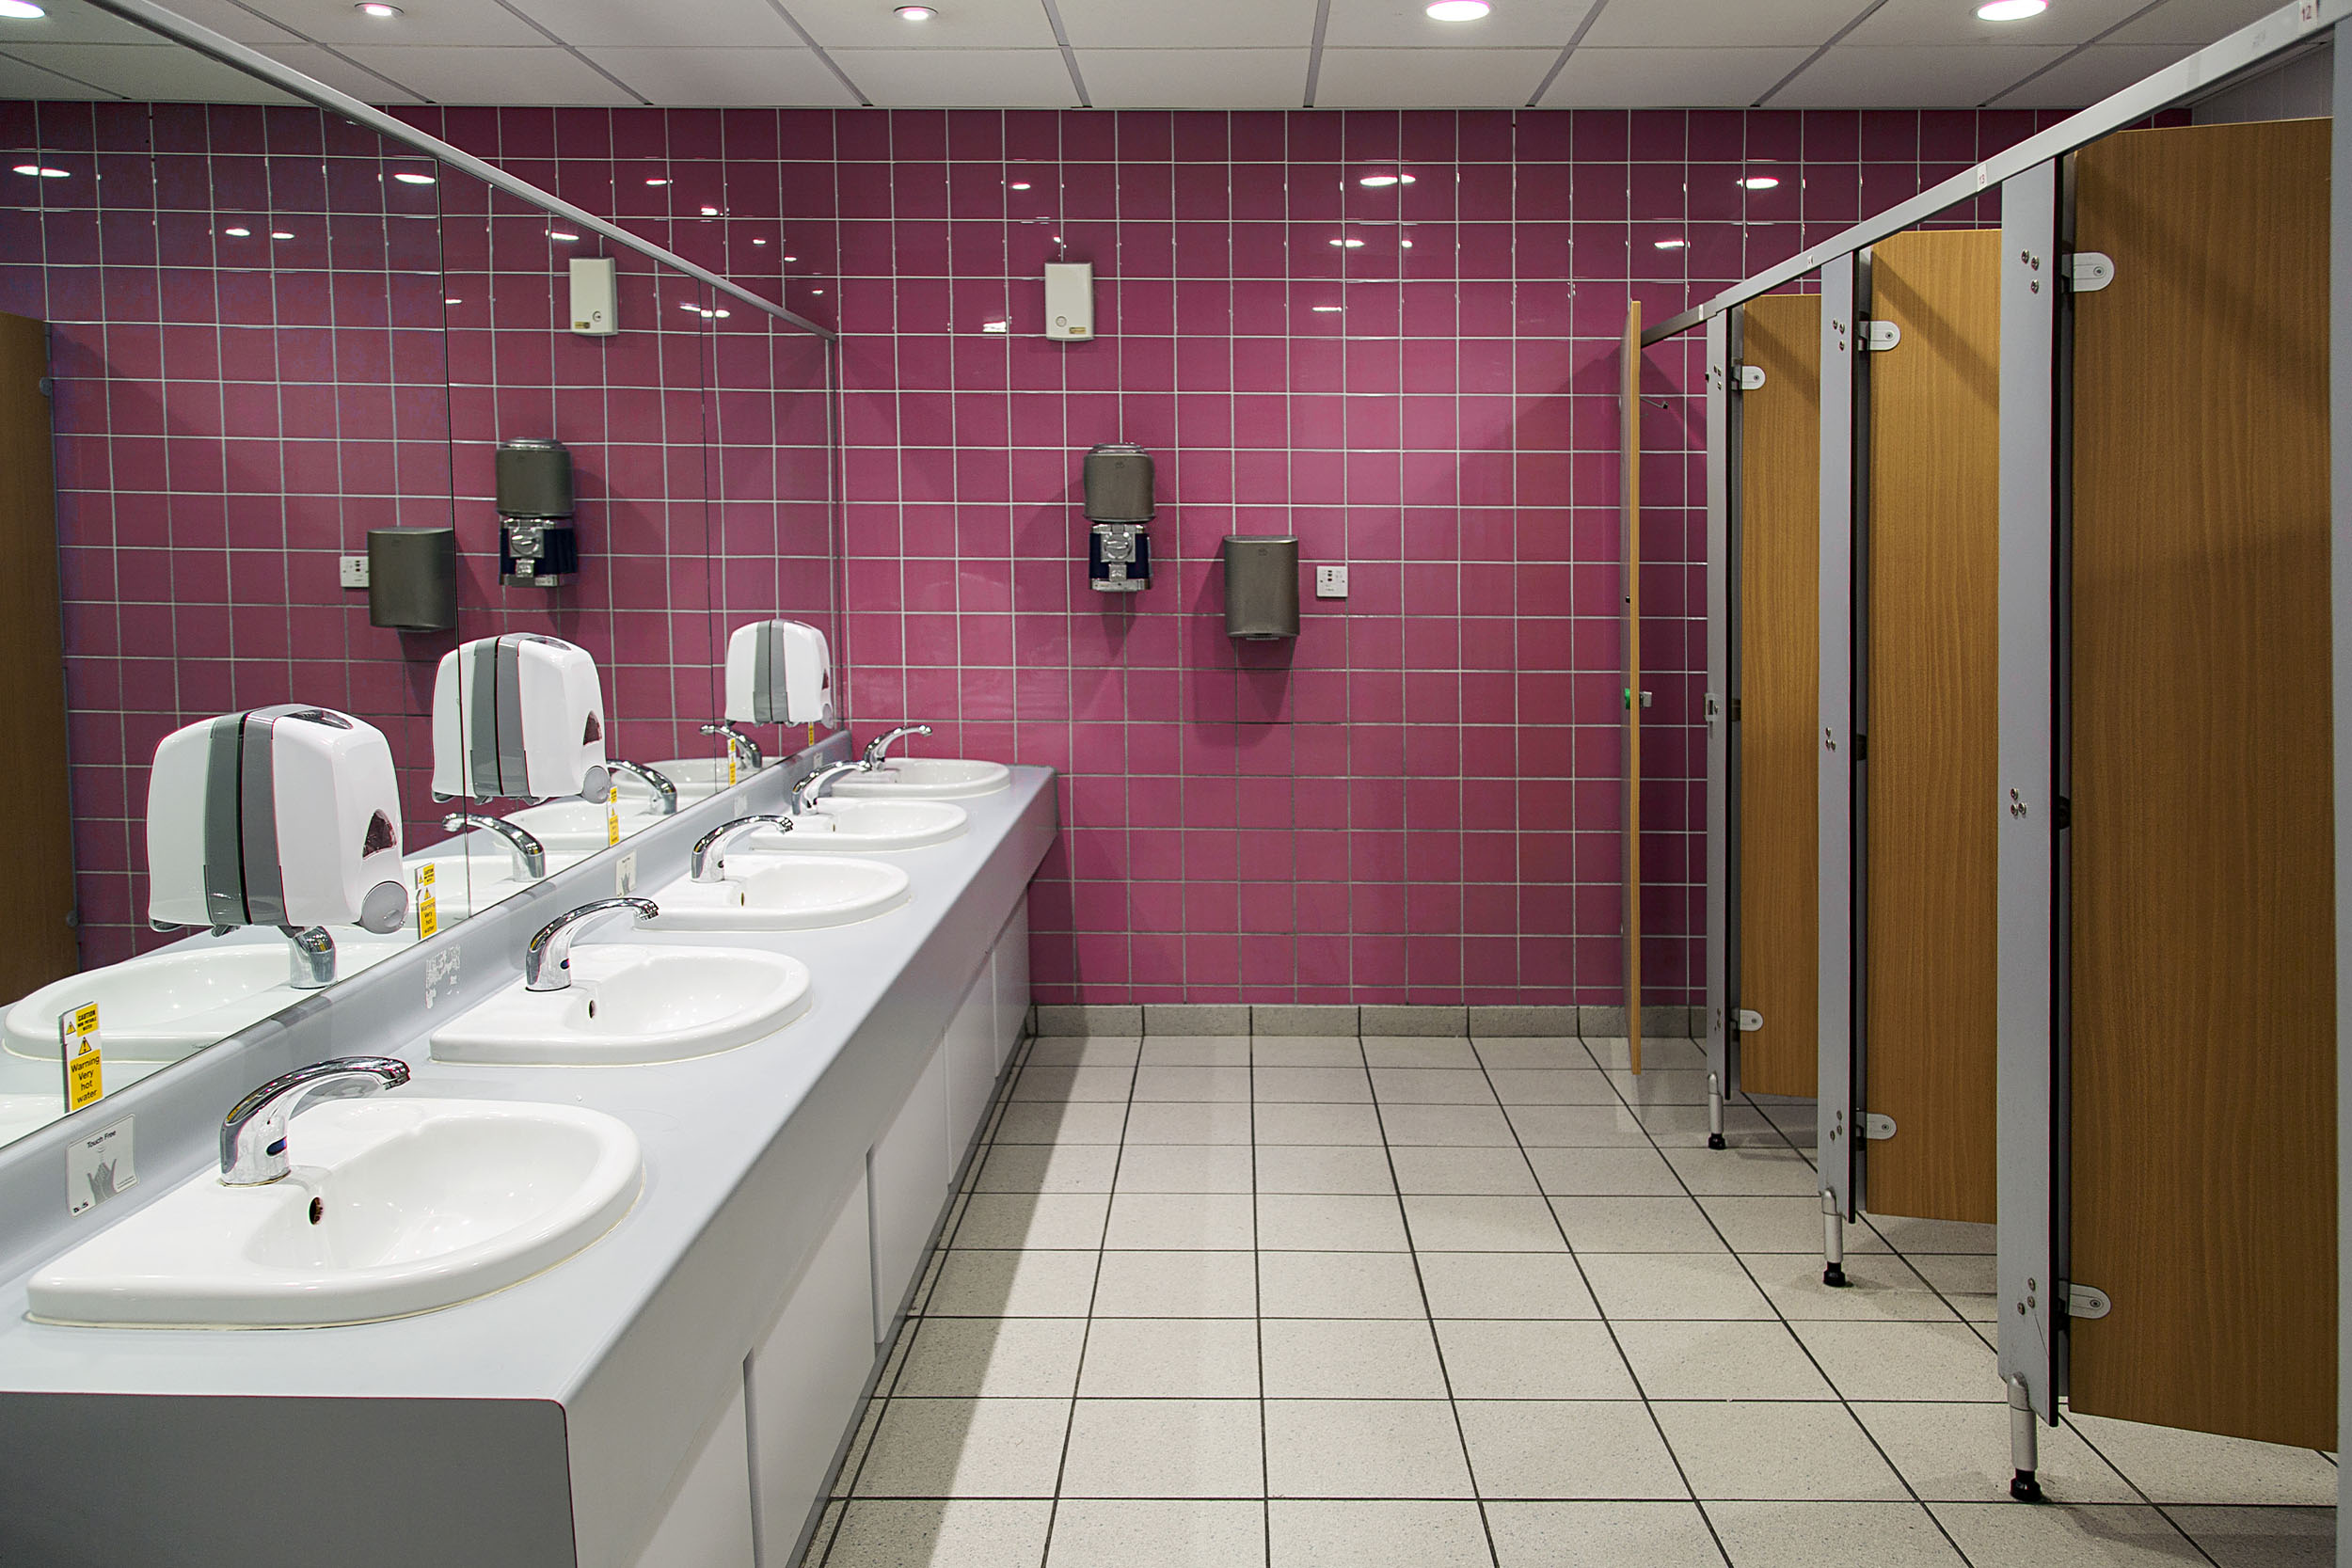 7 quejas de limpieza de baños de oficina más comunes - Grupo Parisien